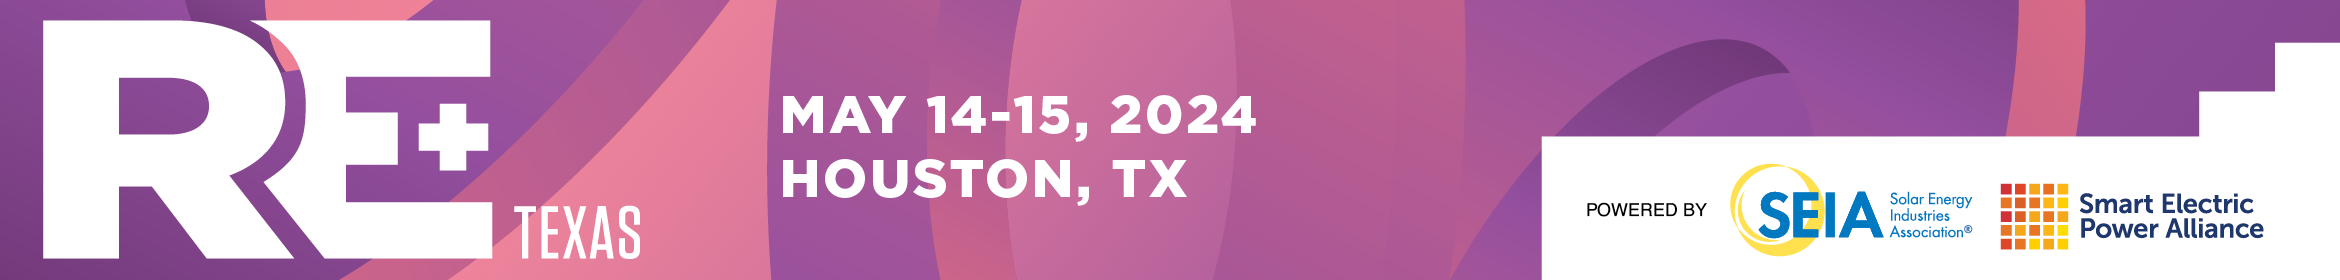 RE+  Texas 2024 Main banner